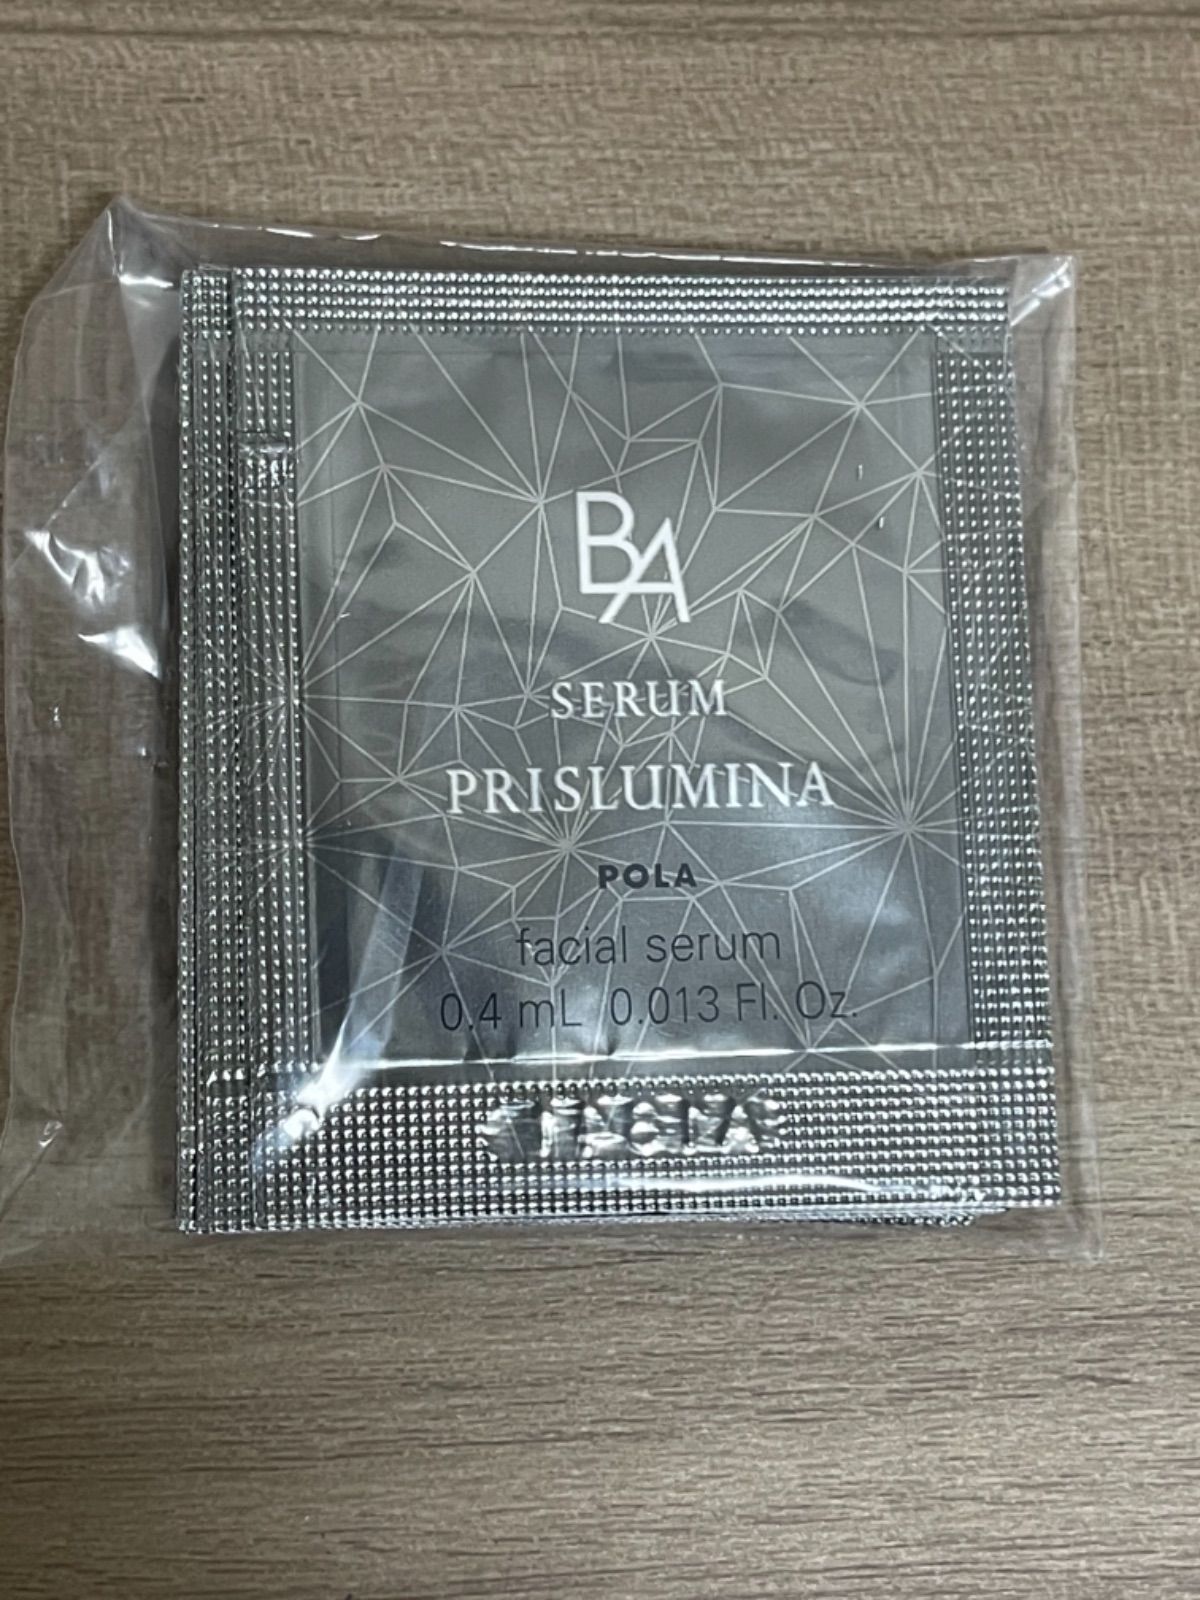 ポーラ☆POLA 新BAセラムプリズルミナサンプル 0.4ml×50包 セット